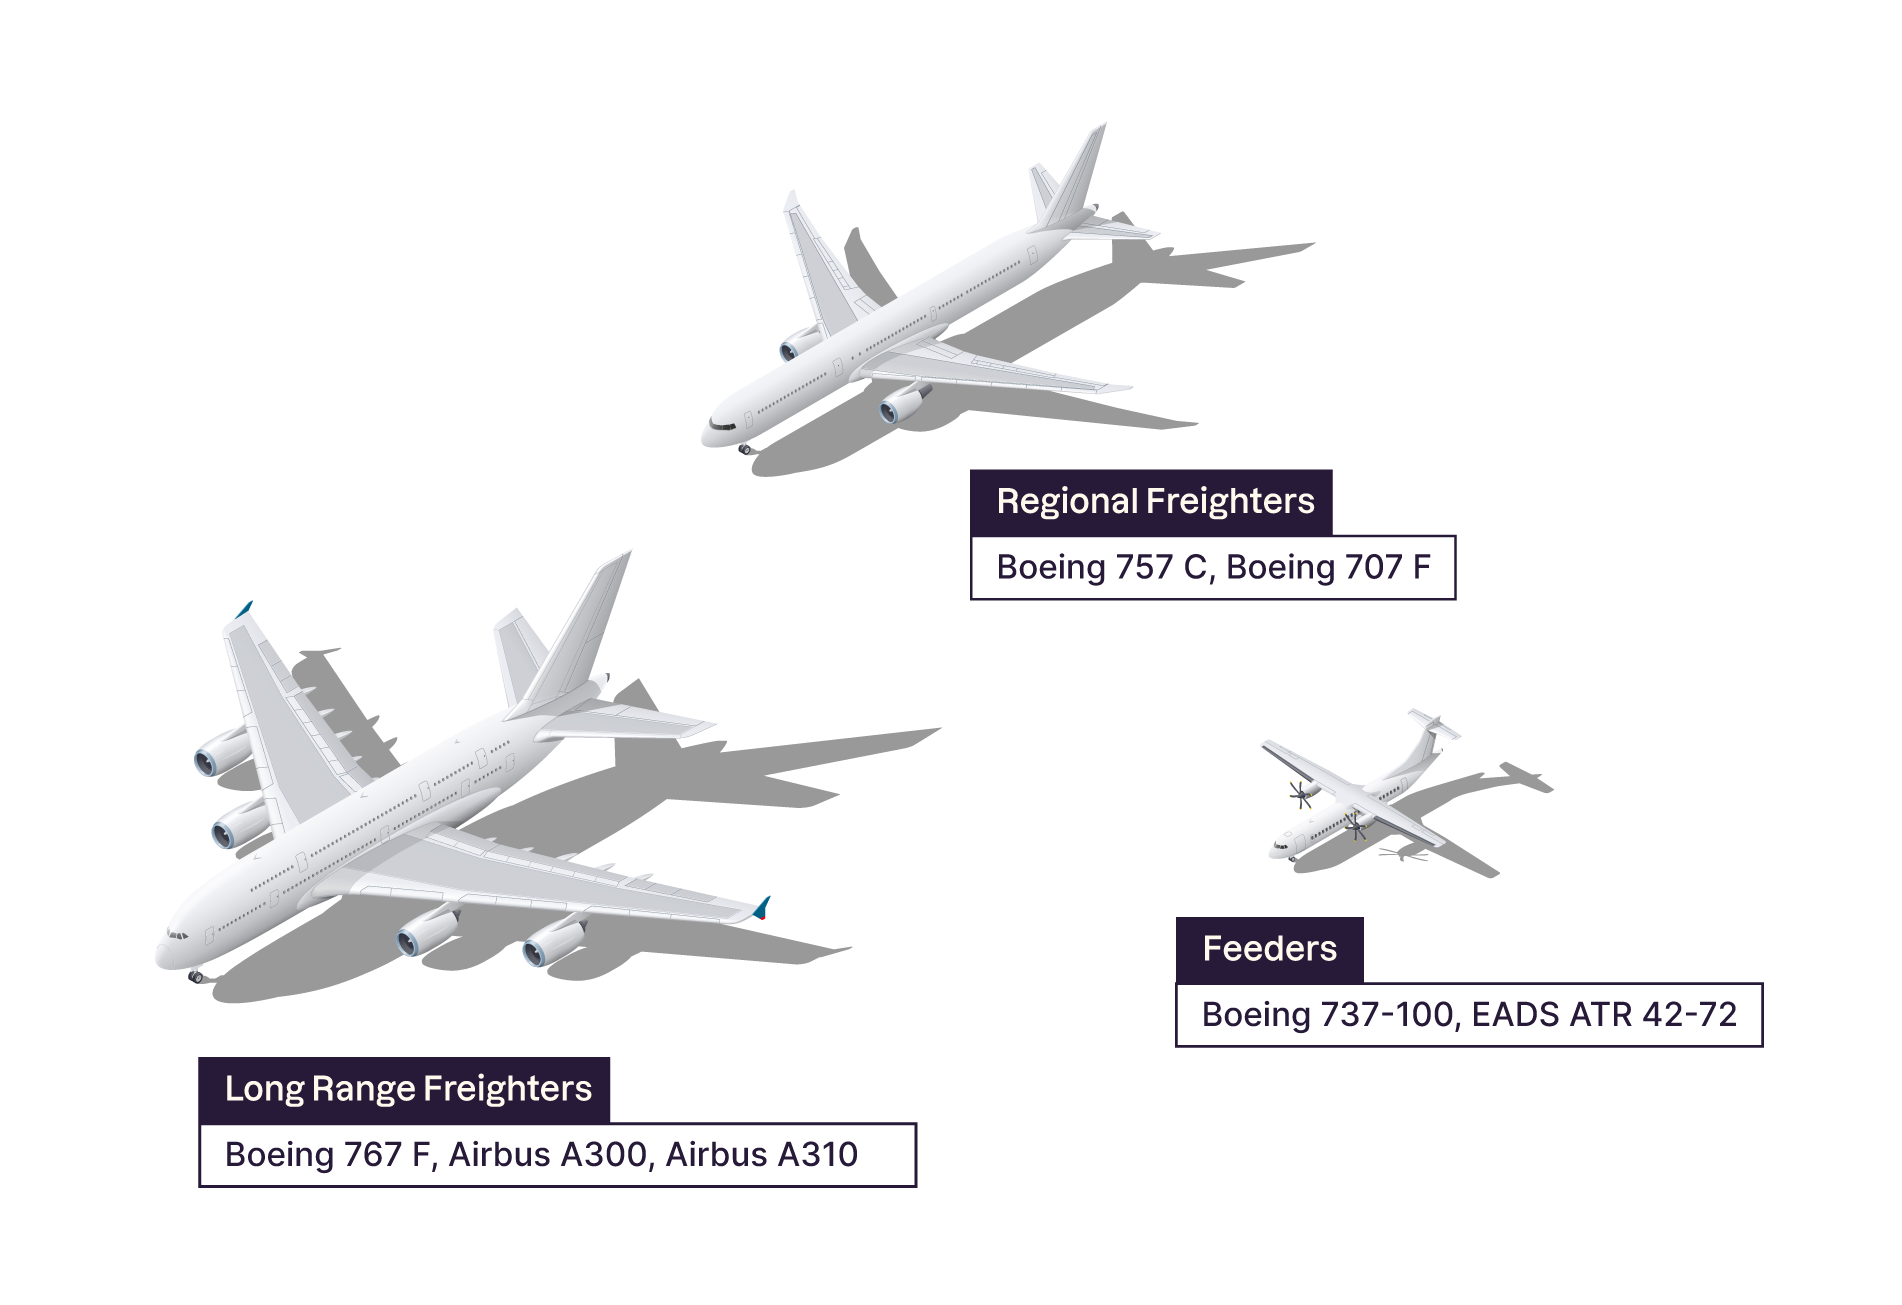 Différents types d’avions proposant du fret aérien : long range freighters, regional freighters, feeders.